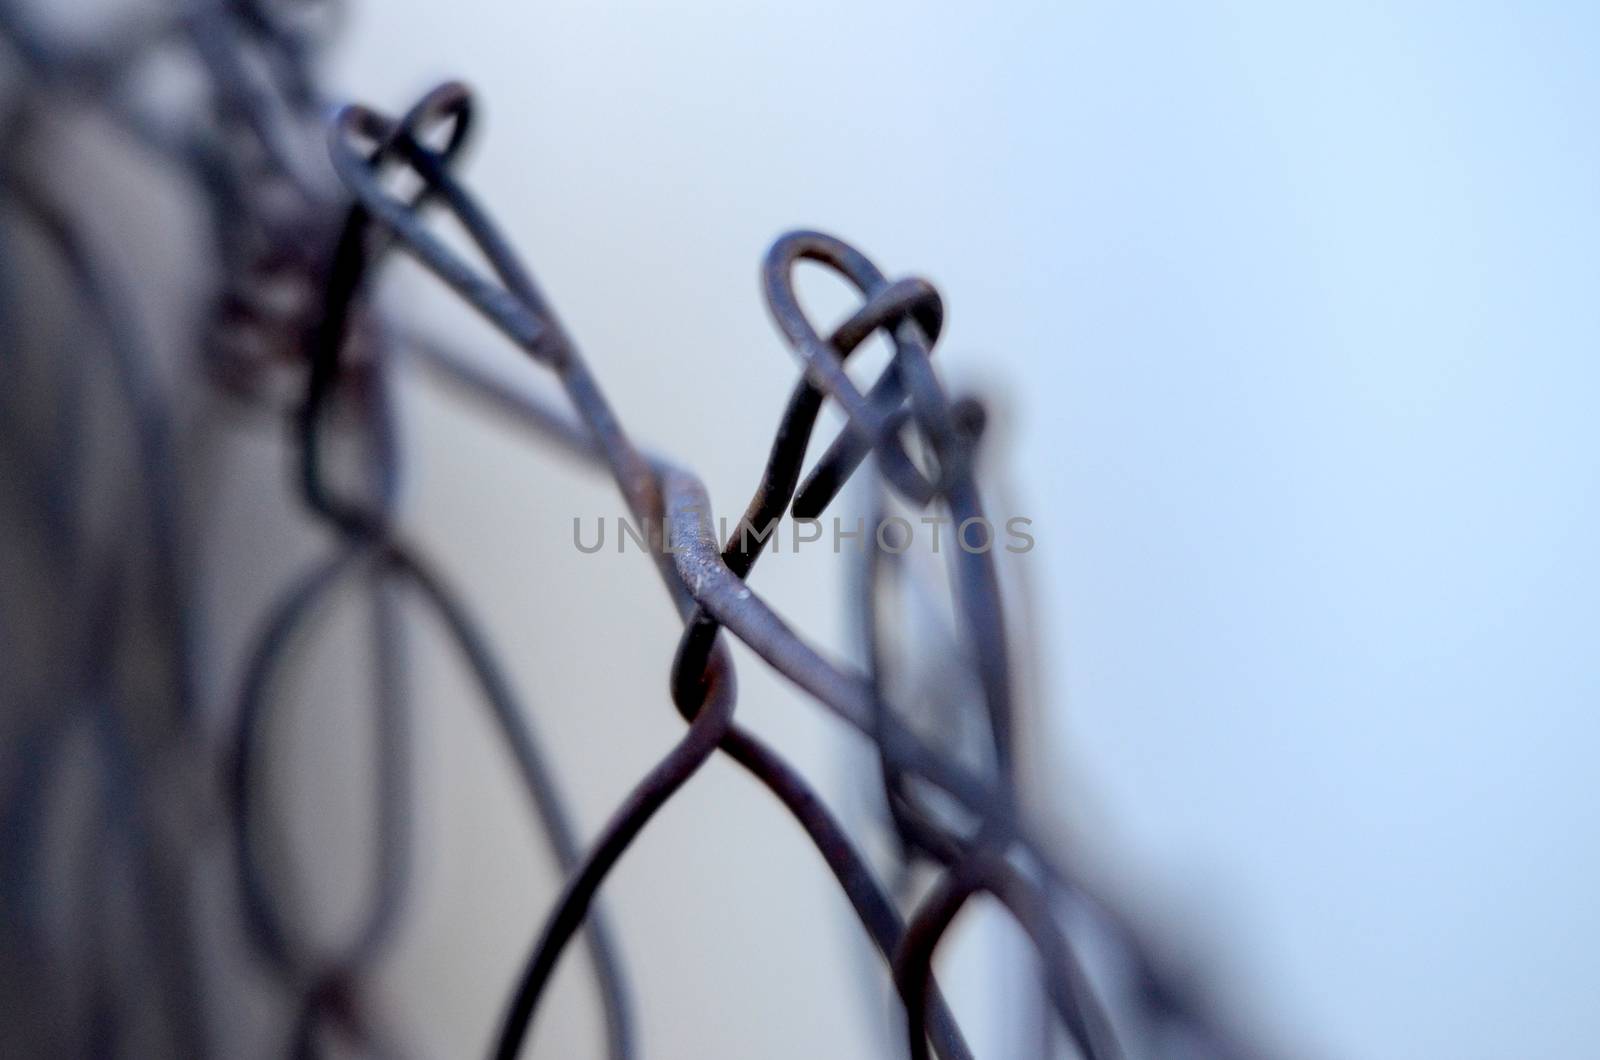 Metal wire fence by nehru